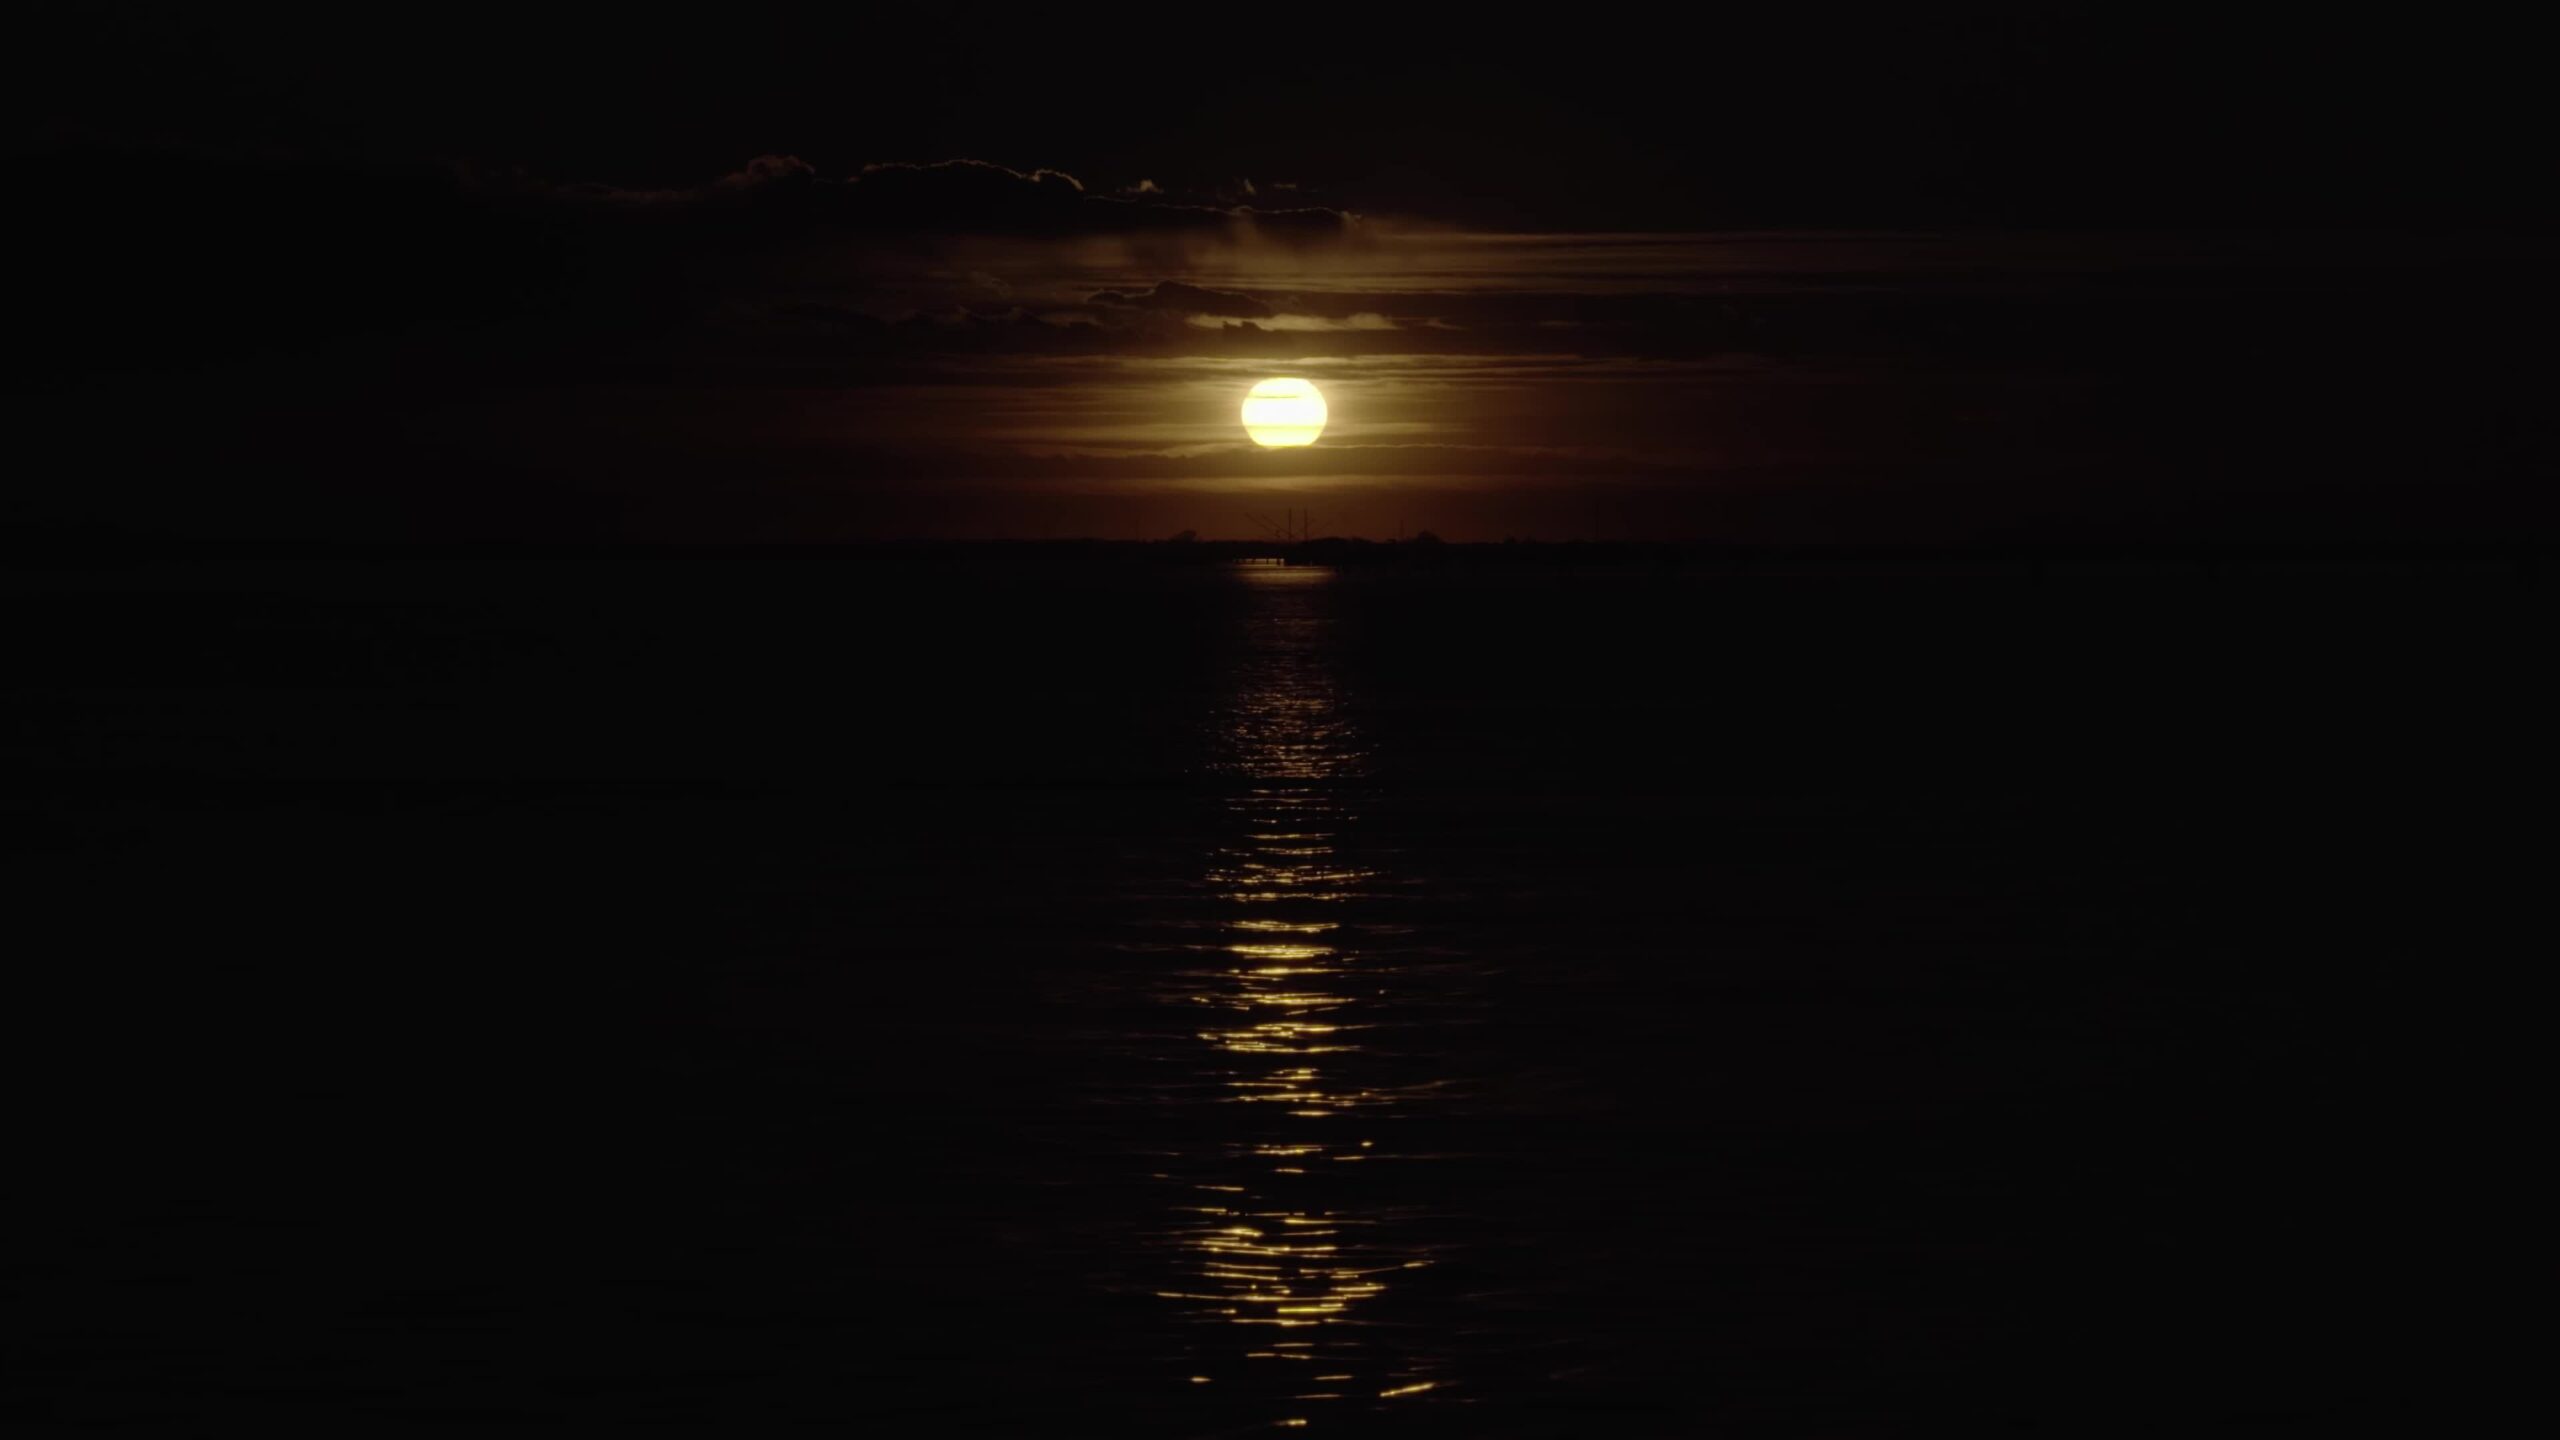 La luce del disco lunare si riflette sull’acqua creando un percorso nel mare